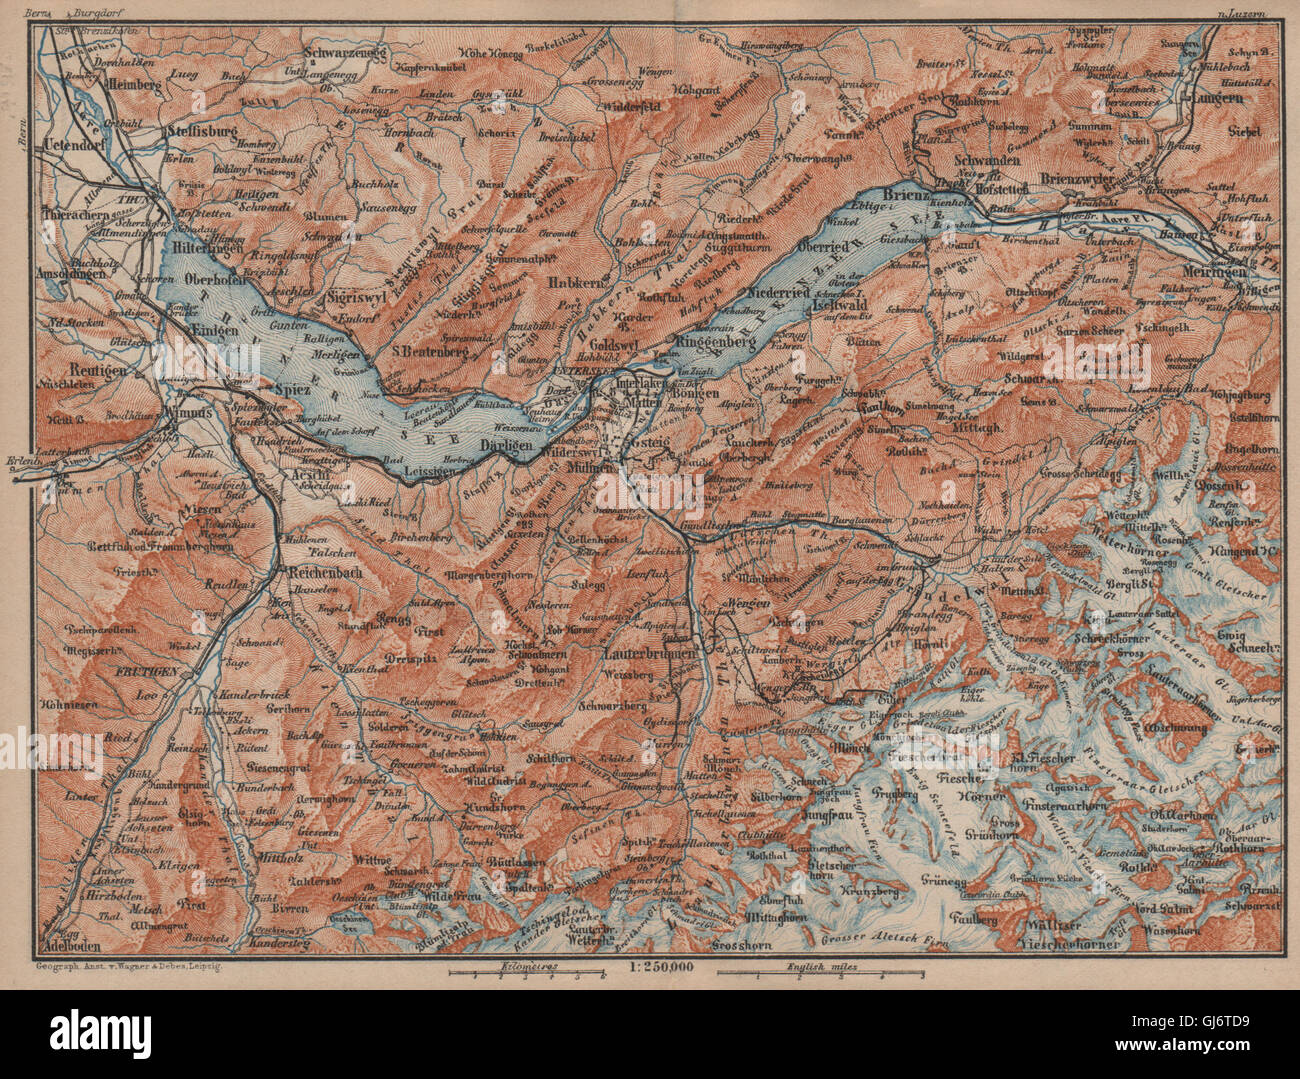 BERNESE OBERLAND. Wengen Mürren Grundelwald Reutigen Interlaken Eiger, 1905 map Stock Photo